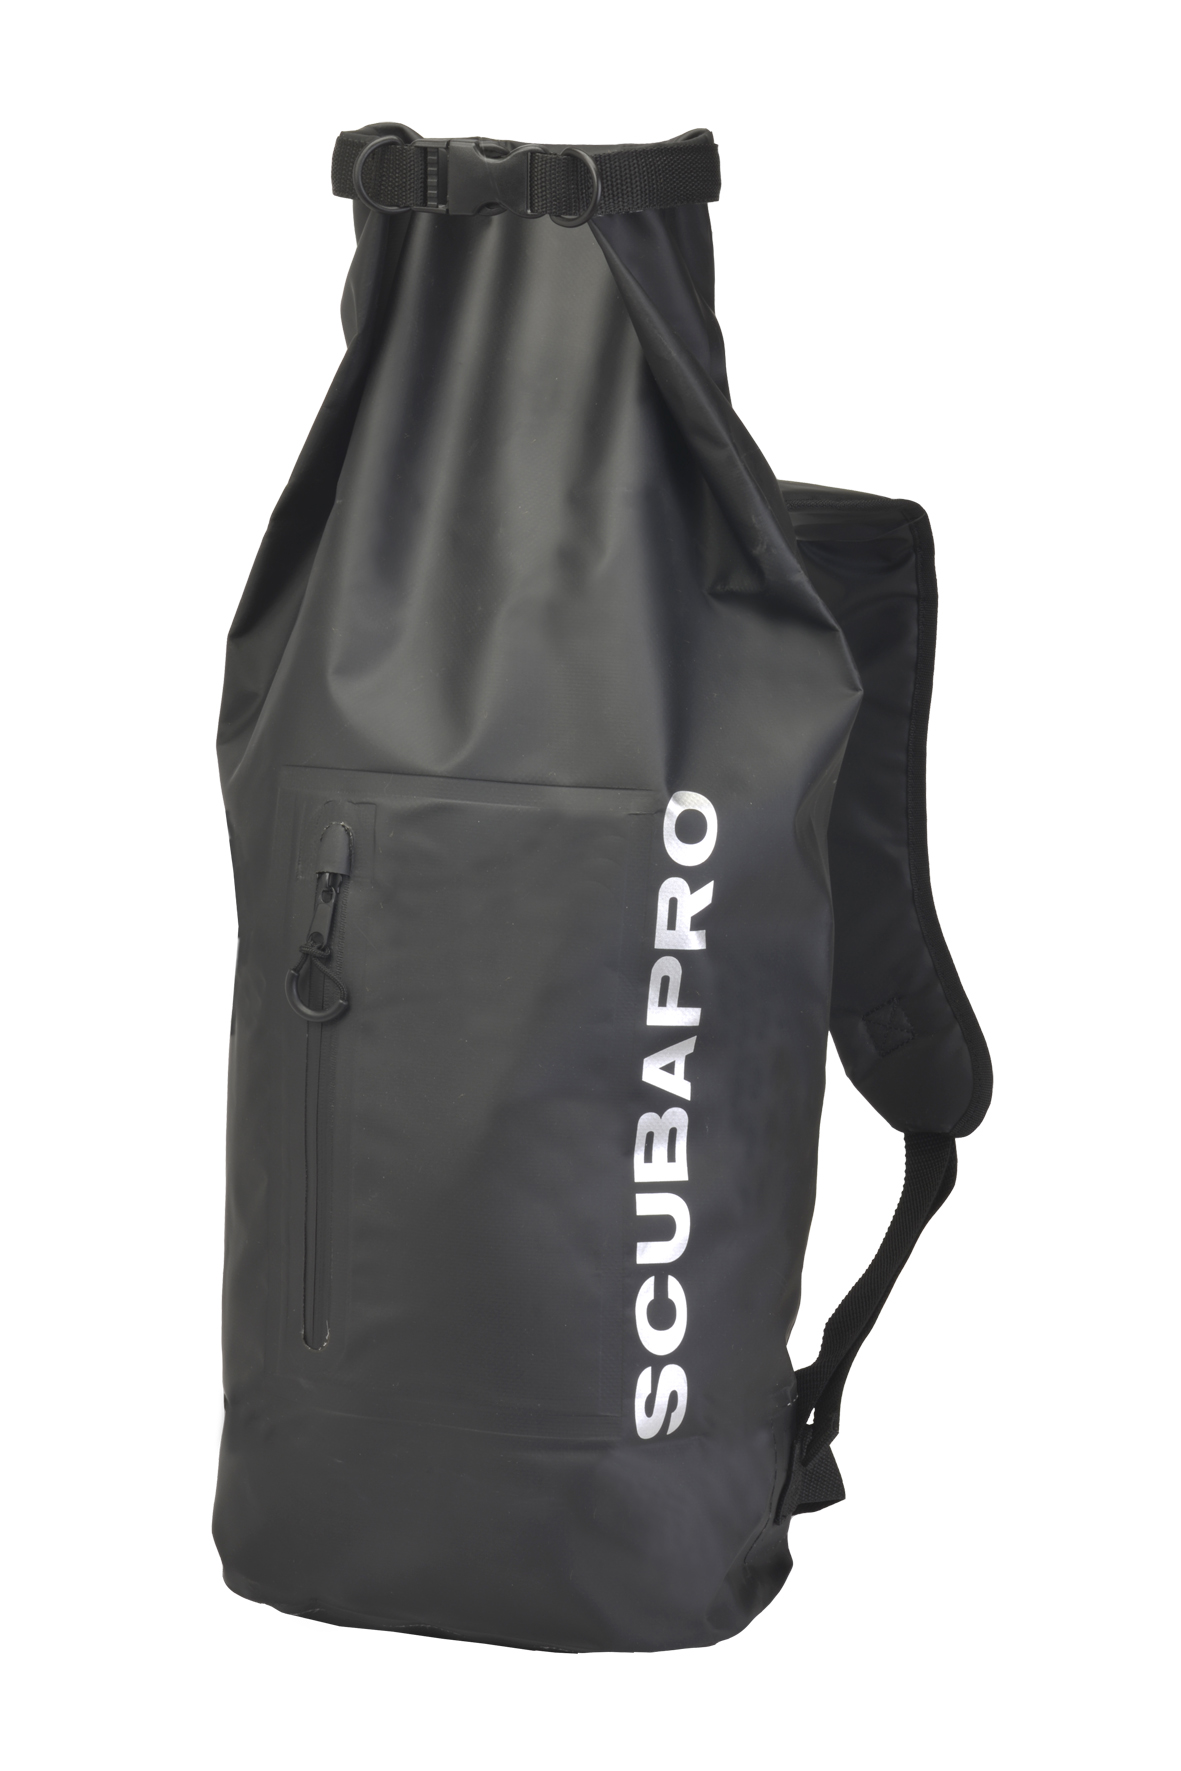 scubapro dry bag